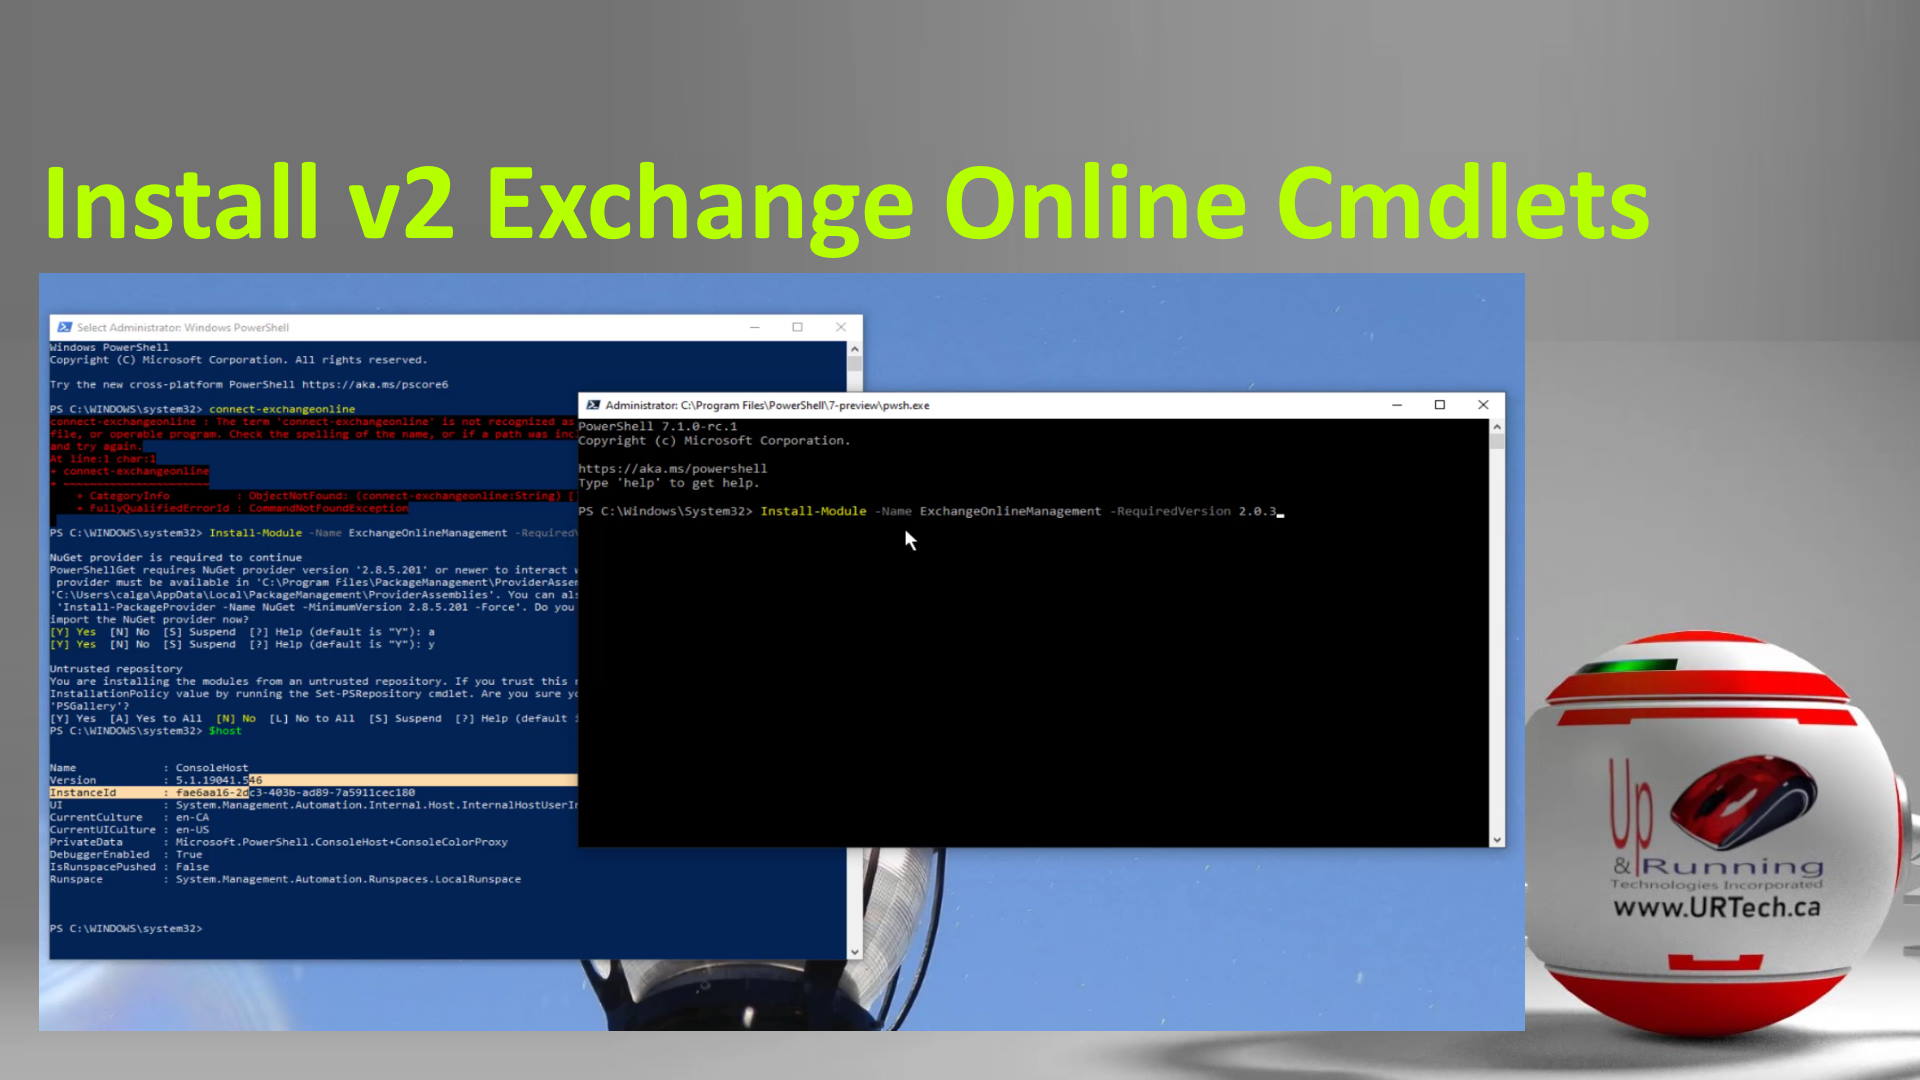 Install v2 Exchange Online Commandlets